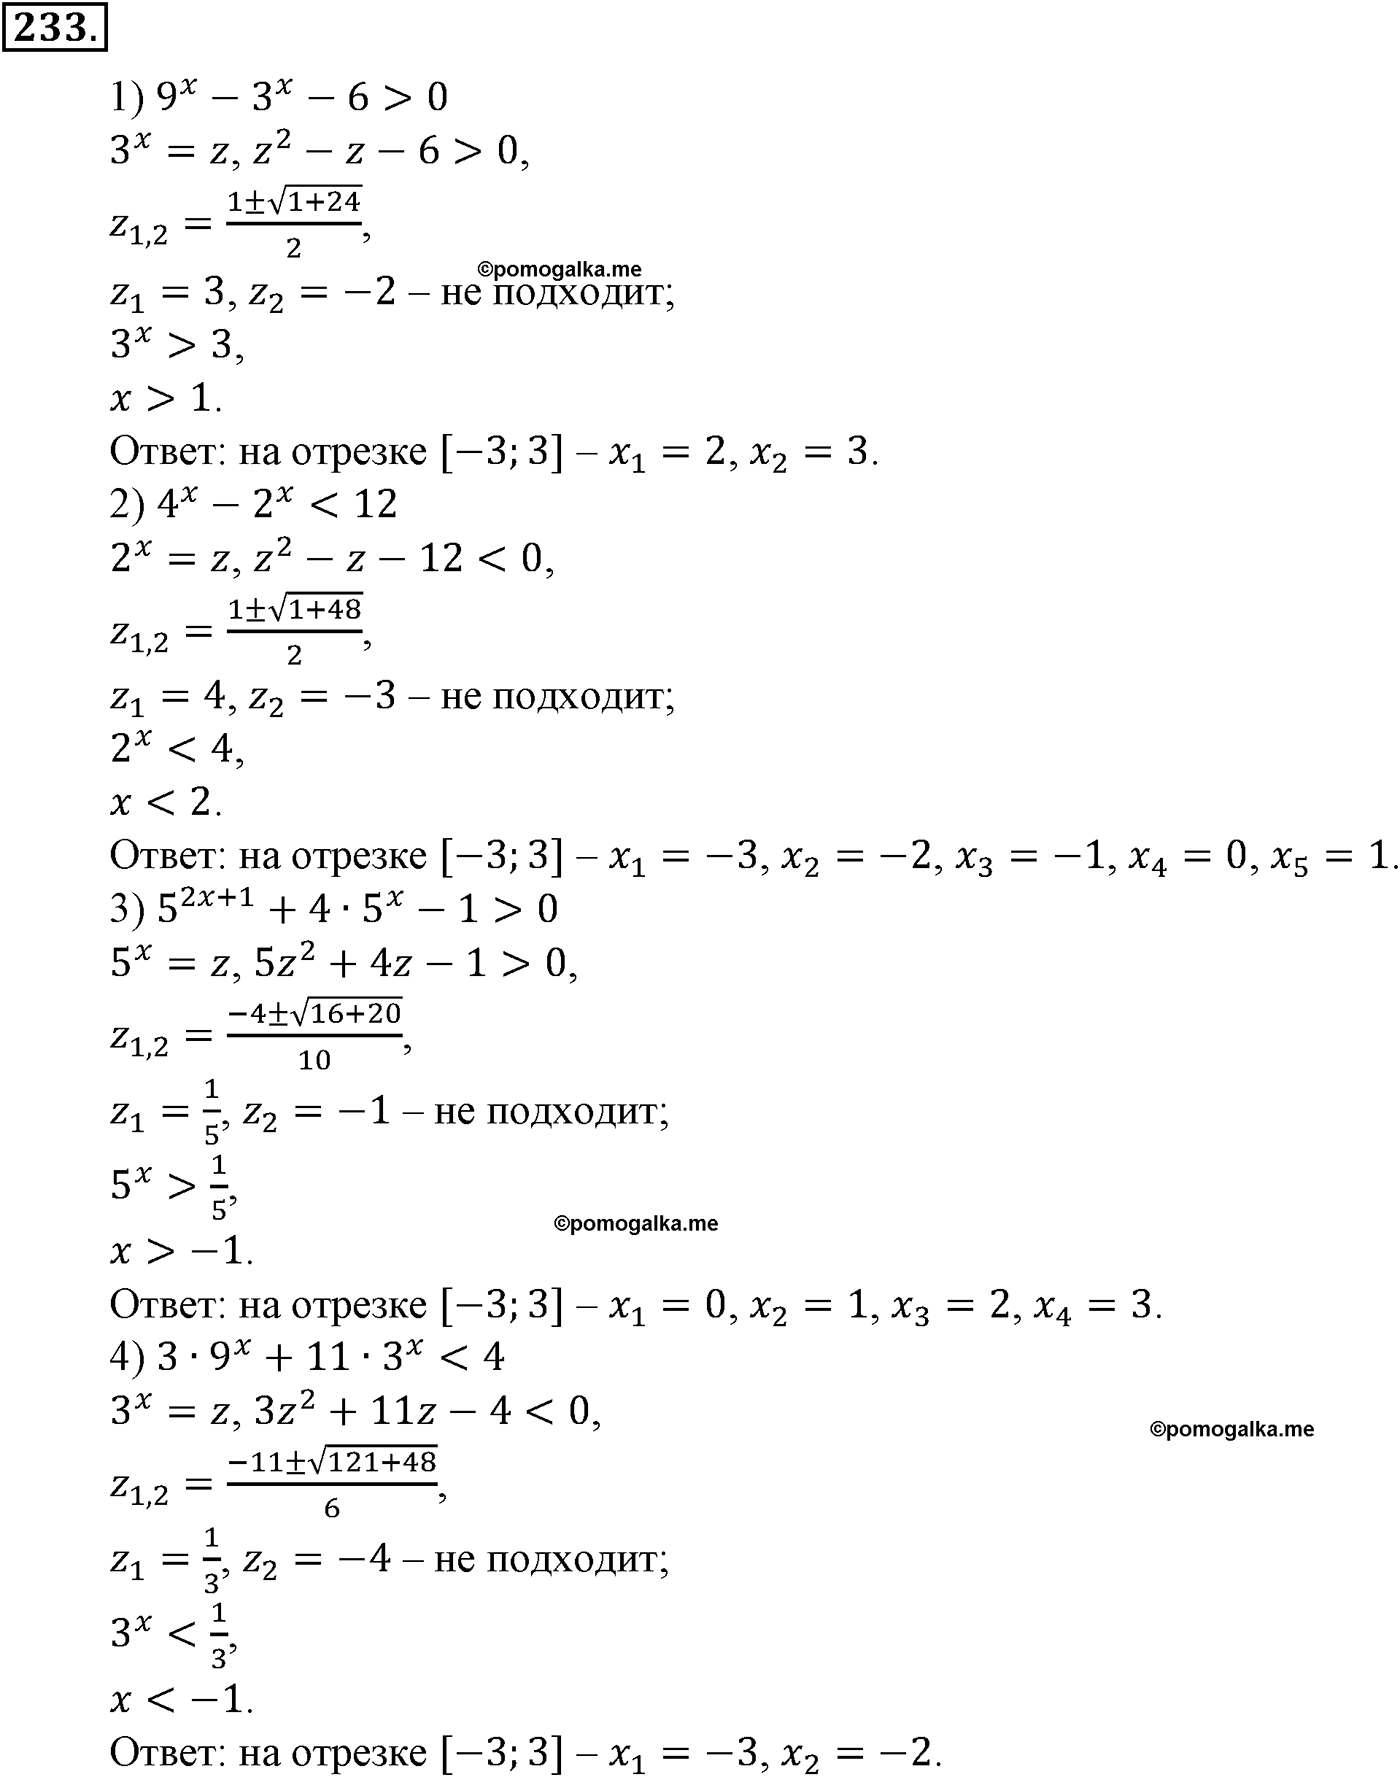 разбор задачи №233 по алгебре за 10-11 класс из учебника Алимова, Колягина